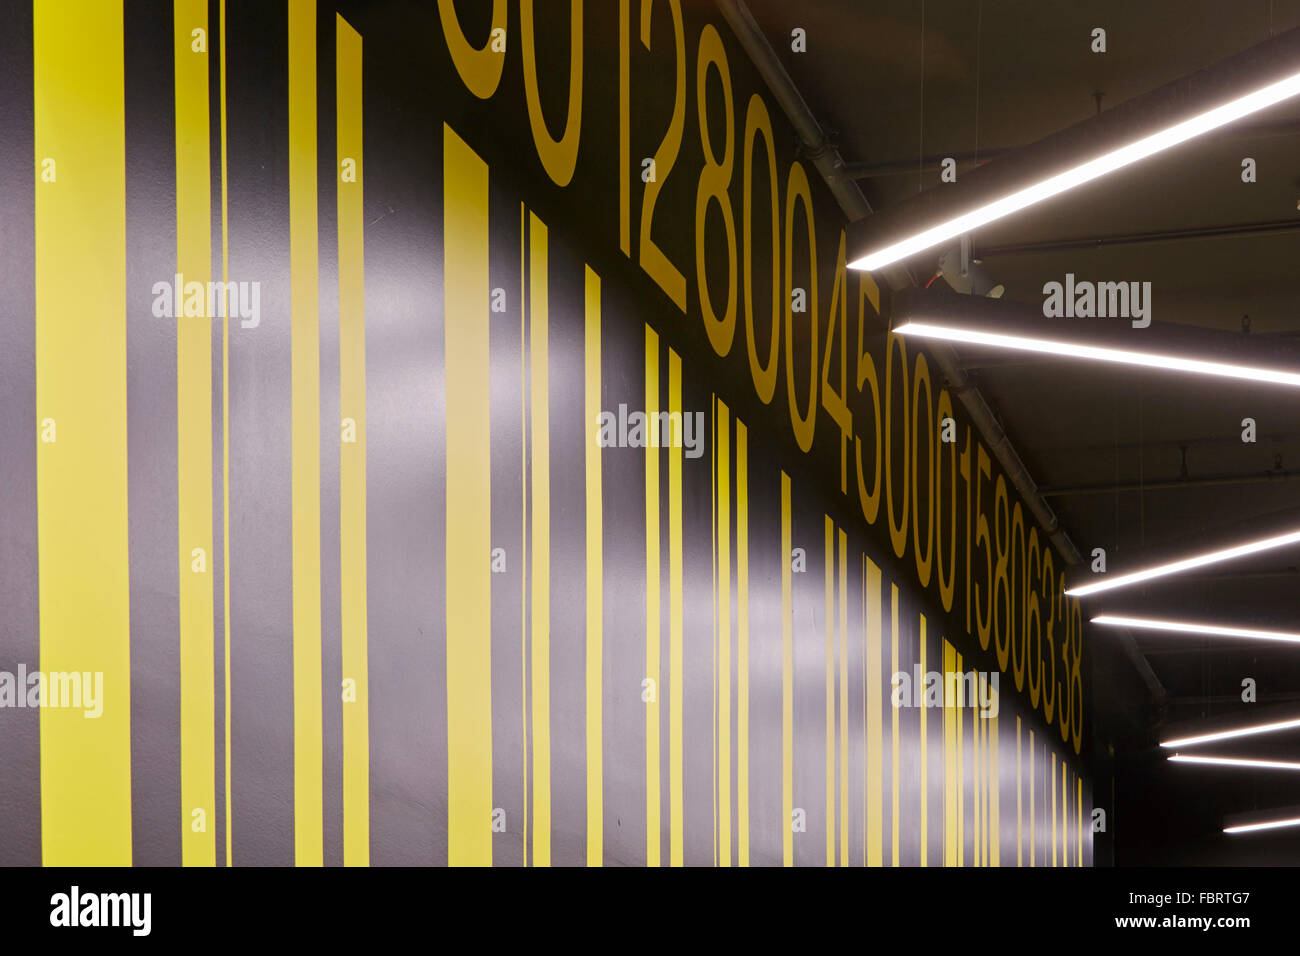 Barcode-Grafiken. Das Alphabeta Gebäude, London, Vereinigtes Königreich. Architekt: RHE, 2015. Stockfoto